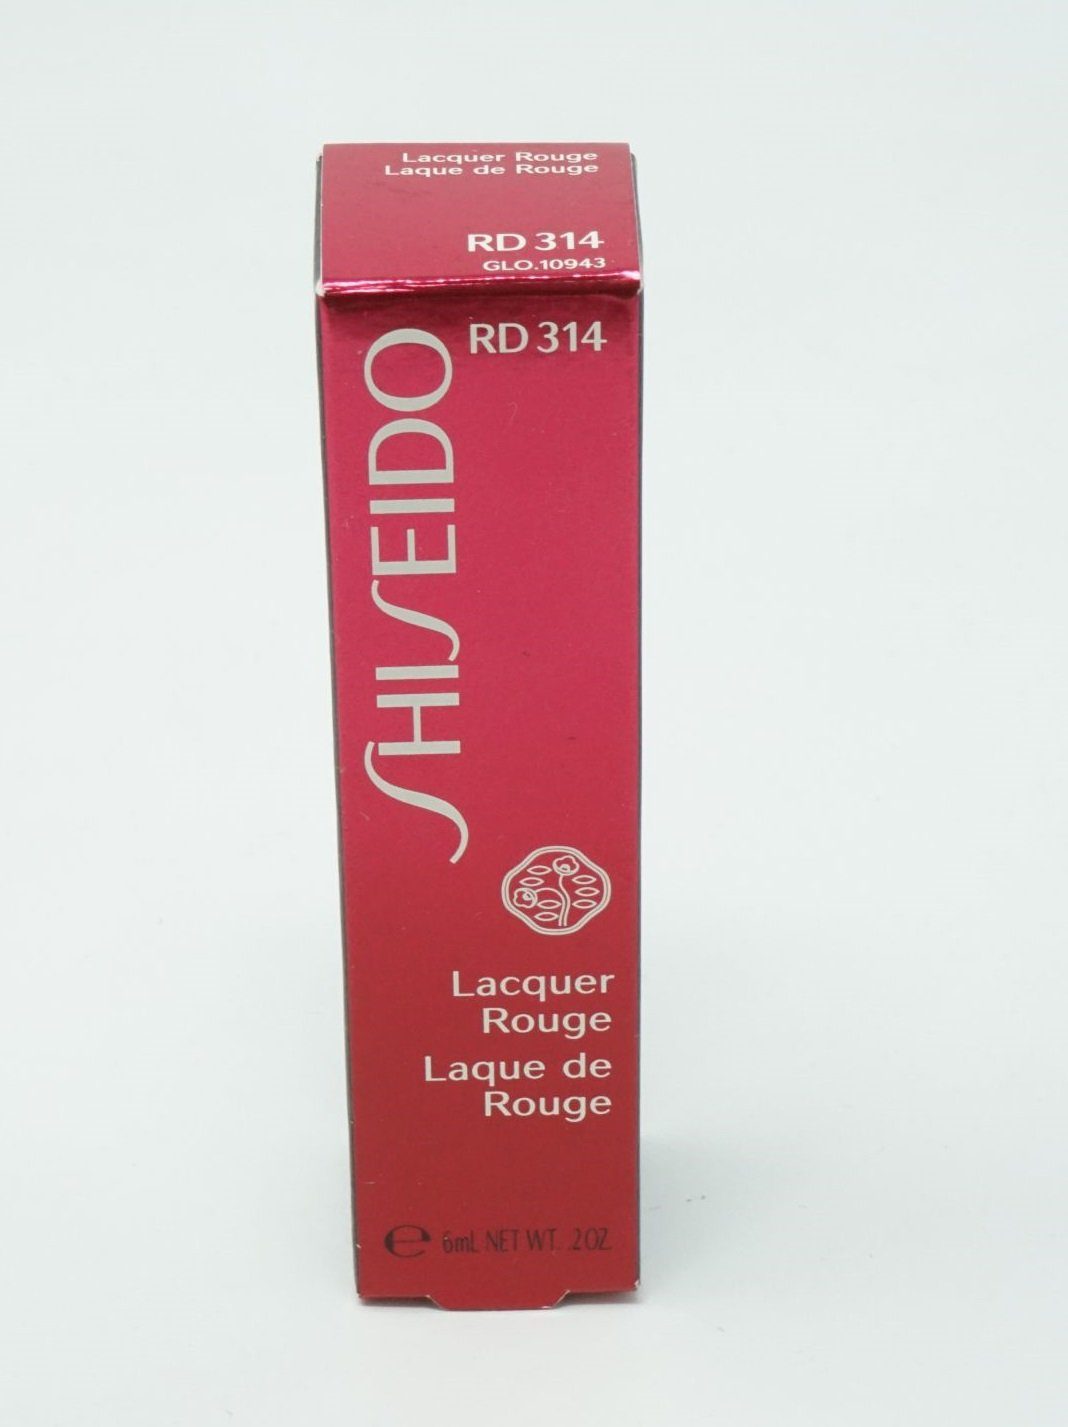 SHISEIDO Lipgloss Shiseido Lacquer Rouge Lipgloss 6ml RD 314